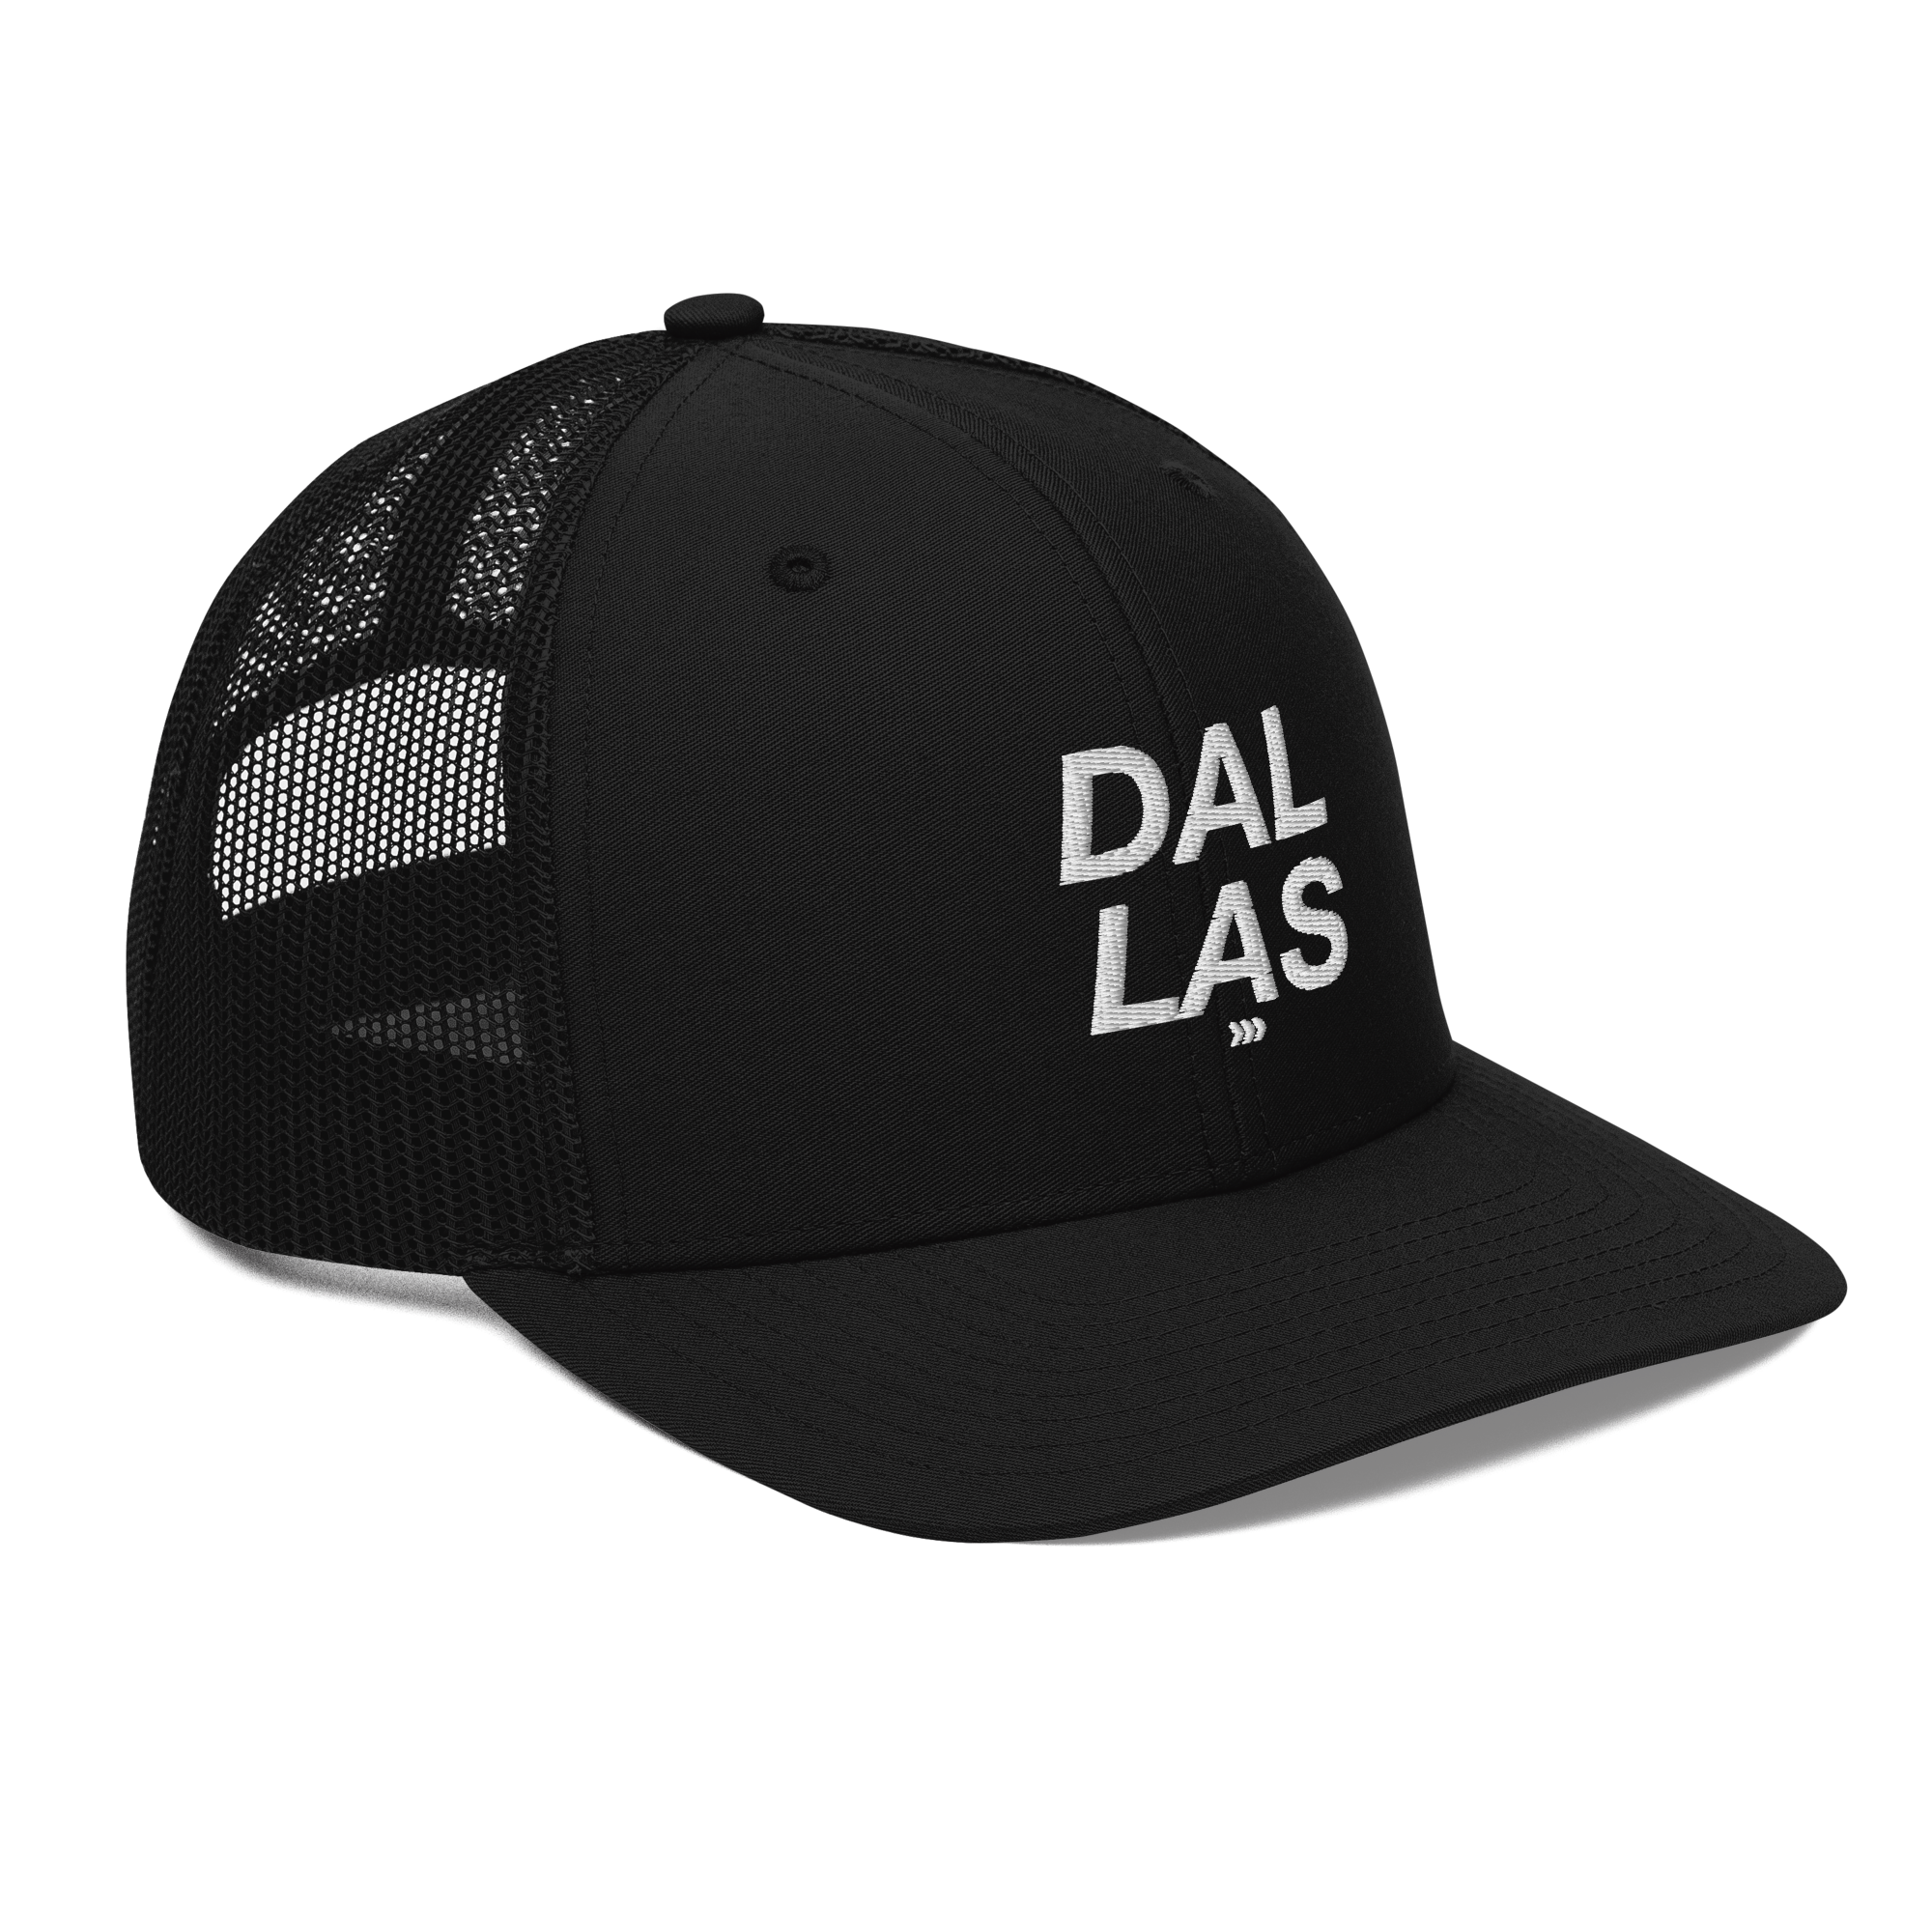 DALLAS - DDN Live Event Snapback